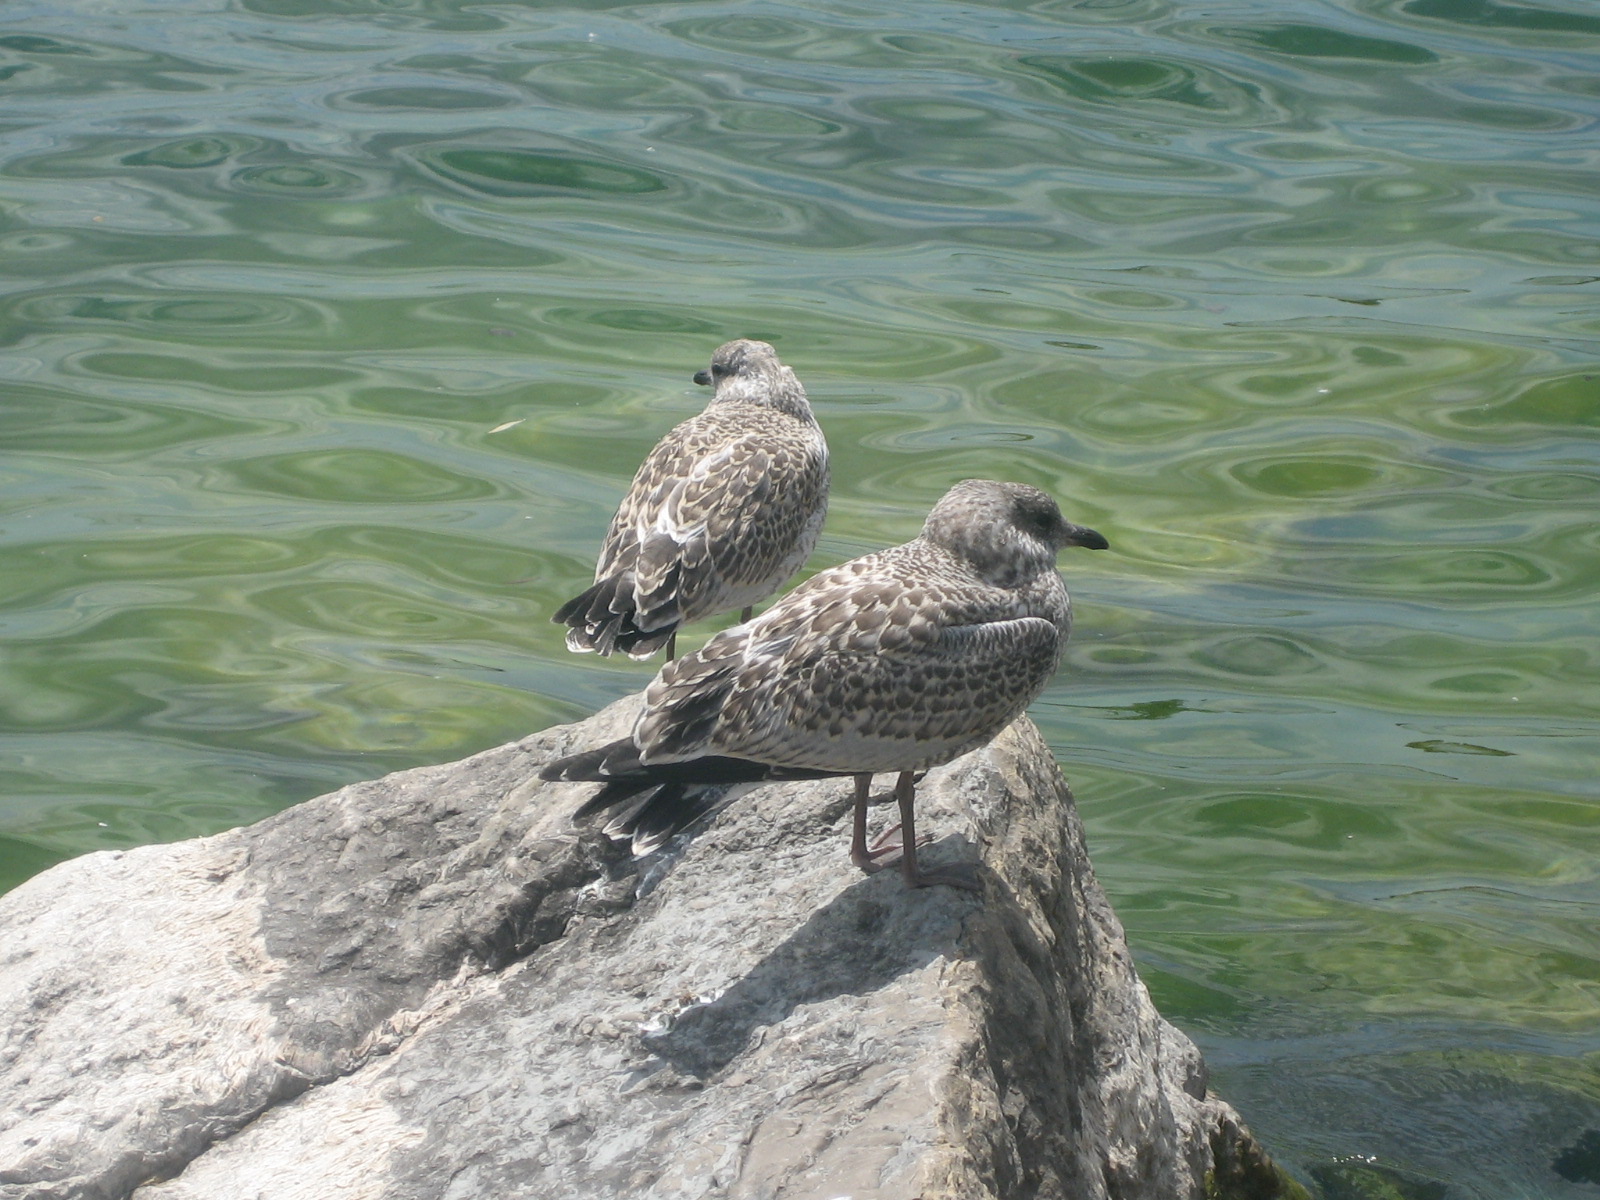 File:Bird on rocks near shoreline.JPG - Wikimedia Commons